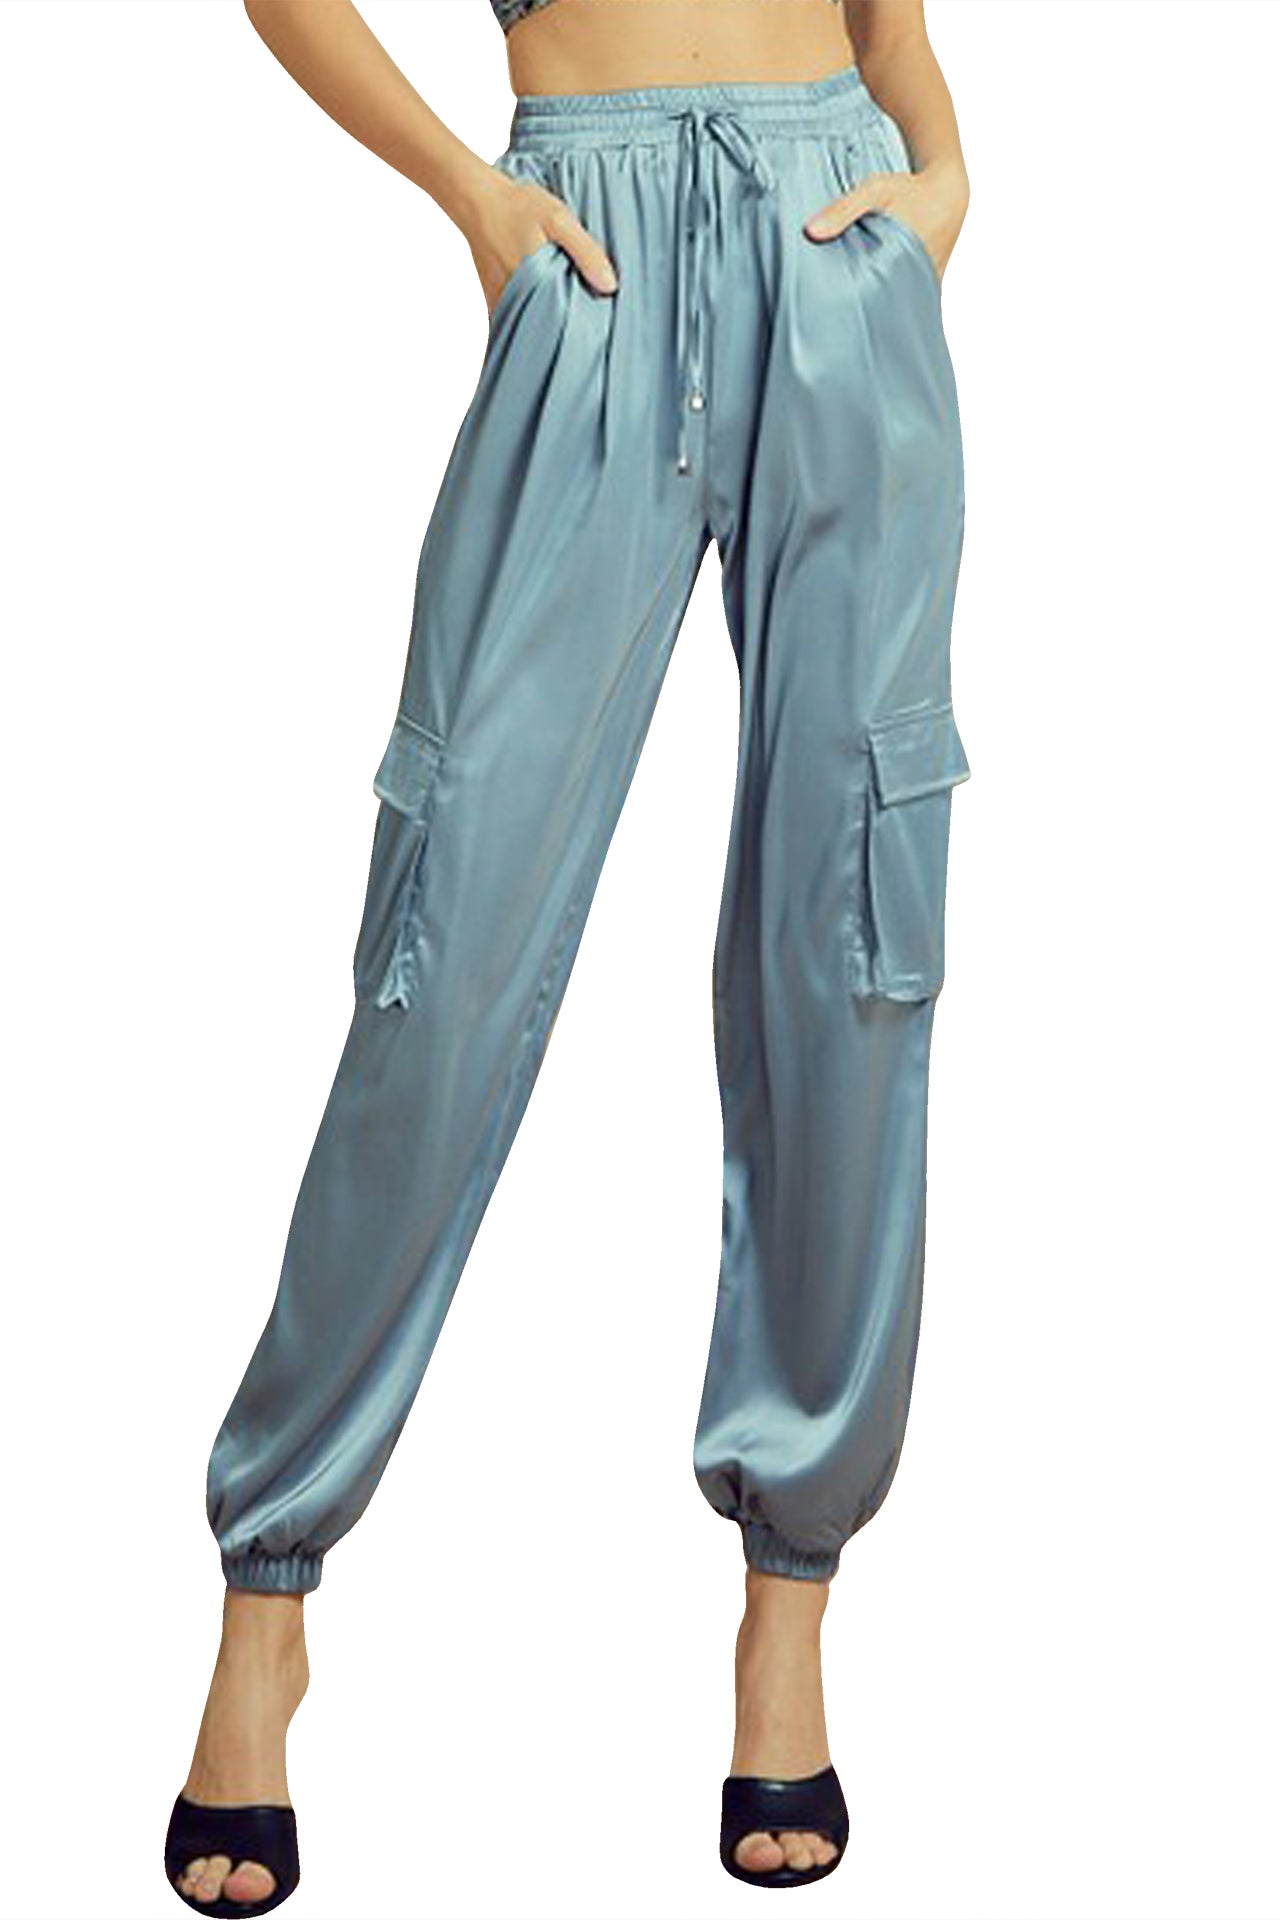 Past Curfew Cargo Pant - Slate Blue | Pants for women, High waisted dress  pants, Fashion nova pants